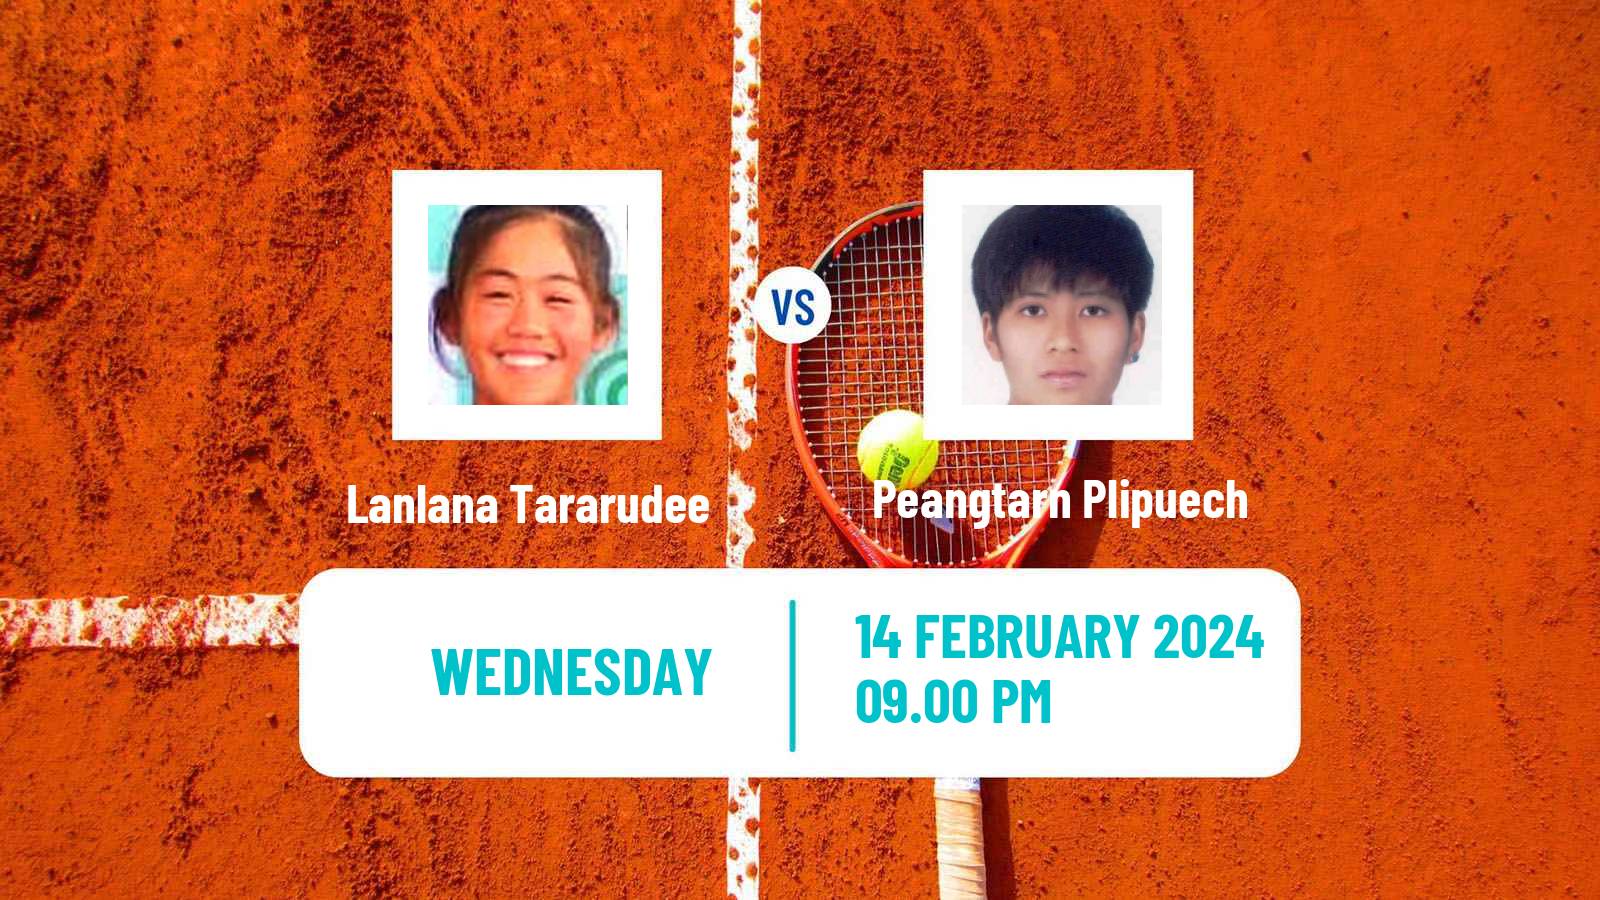 Tennis ITF W35 Nakhon Si Thammarat Women Lanlana Tararudee - Peangtarn Plipuech